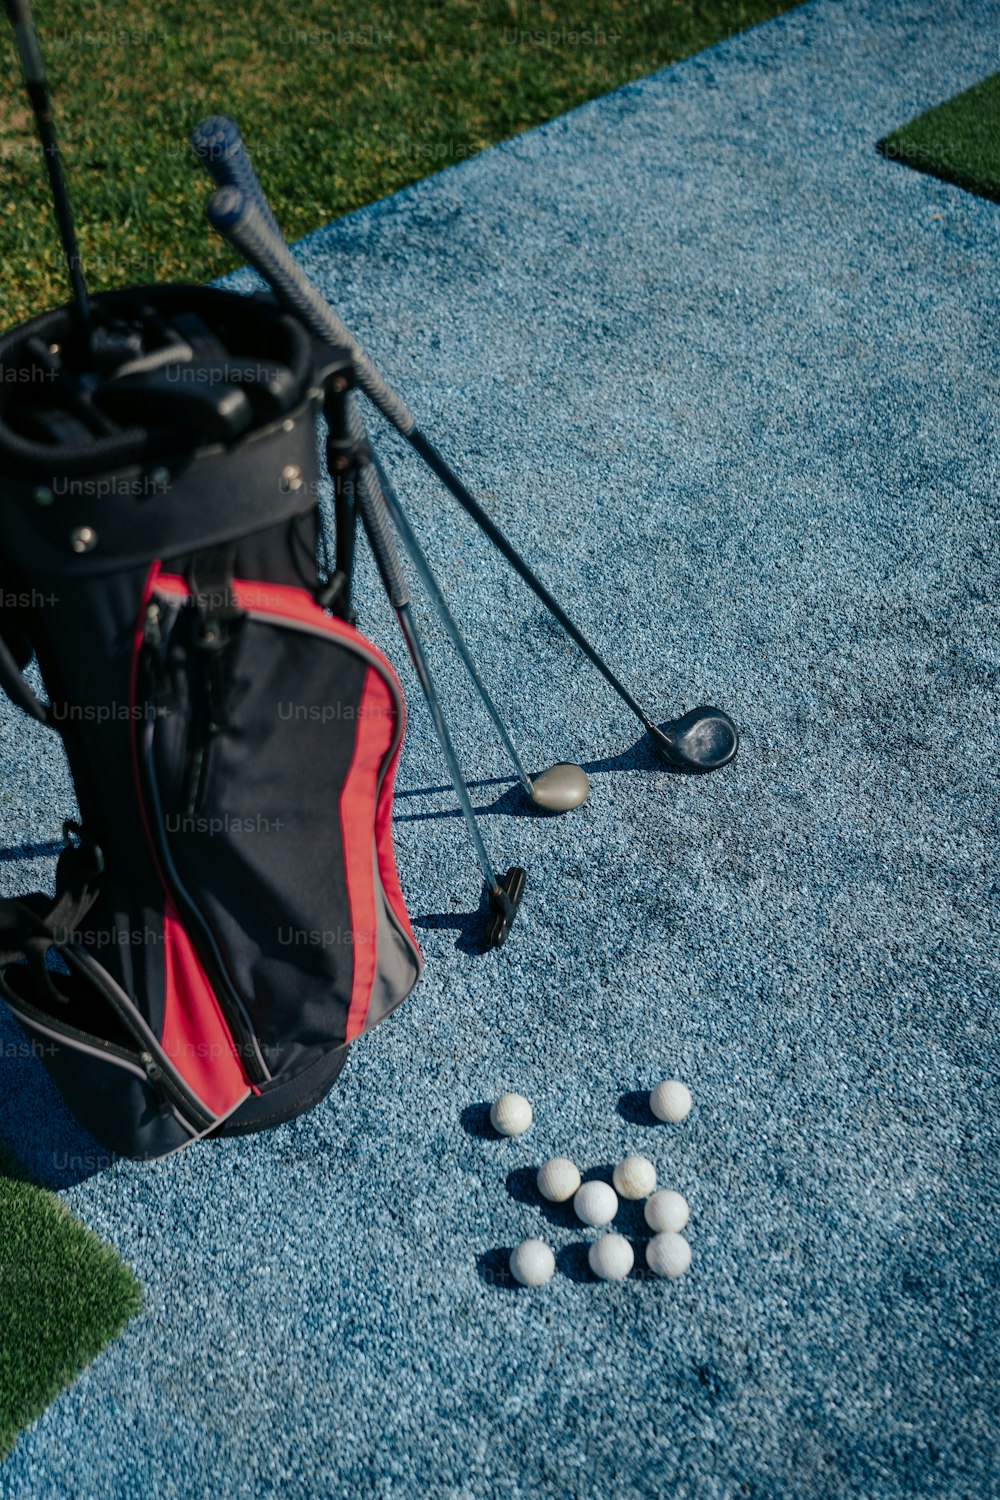 ゴルフクラブの隣の地面に座っているゴルフボールの袋